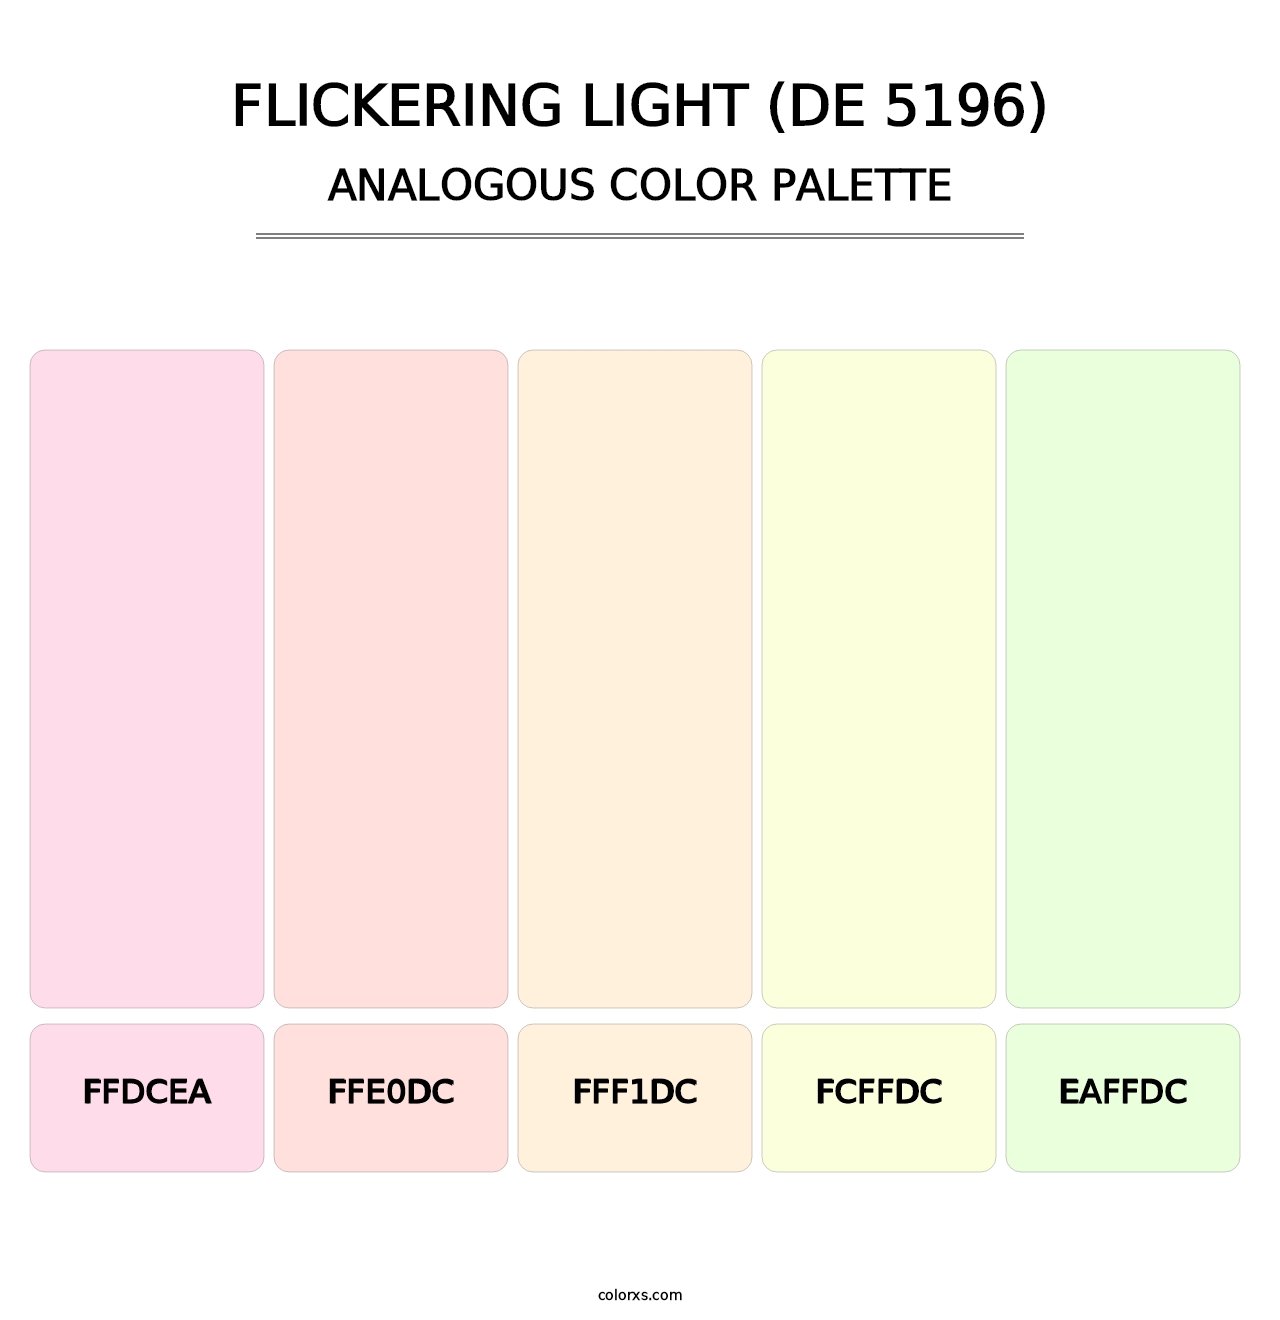 Flickering Light (DE 5196) - Analogous Color Palette